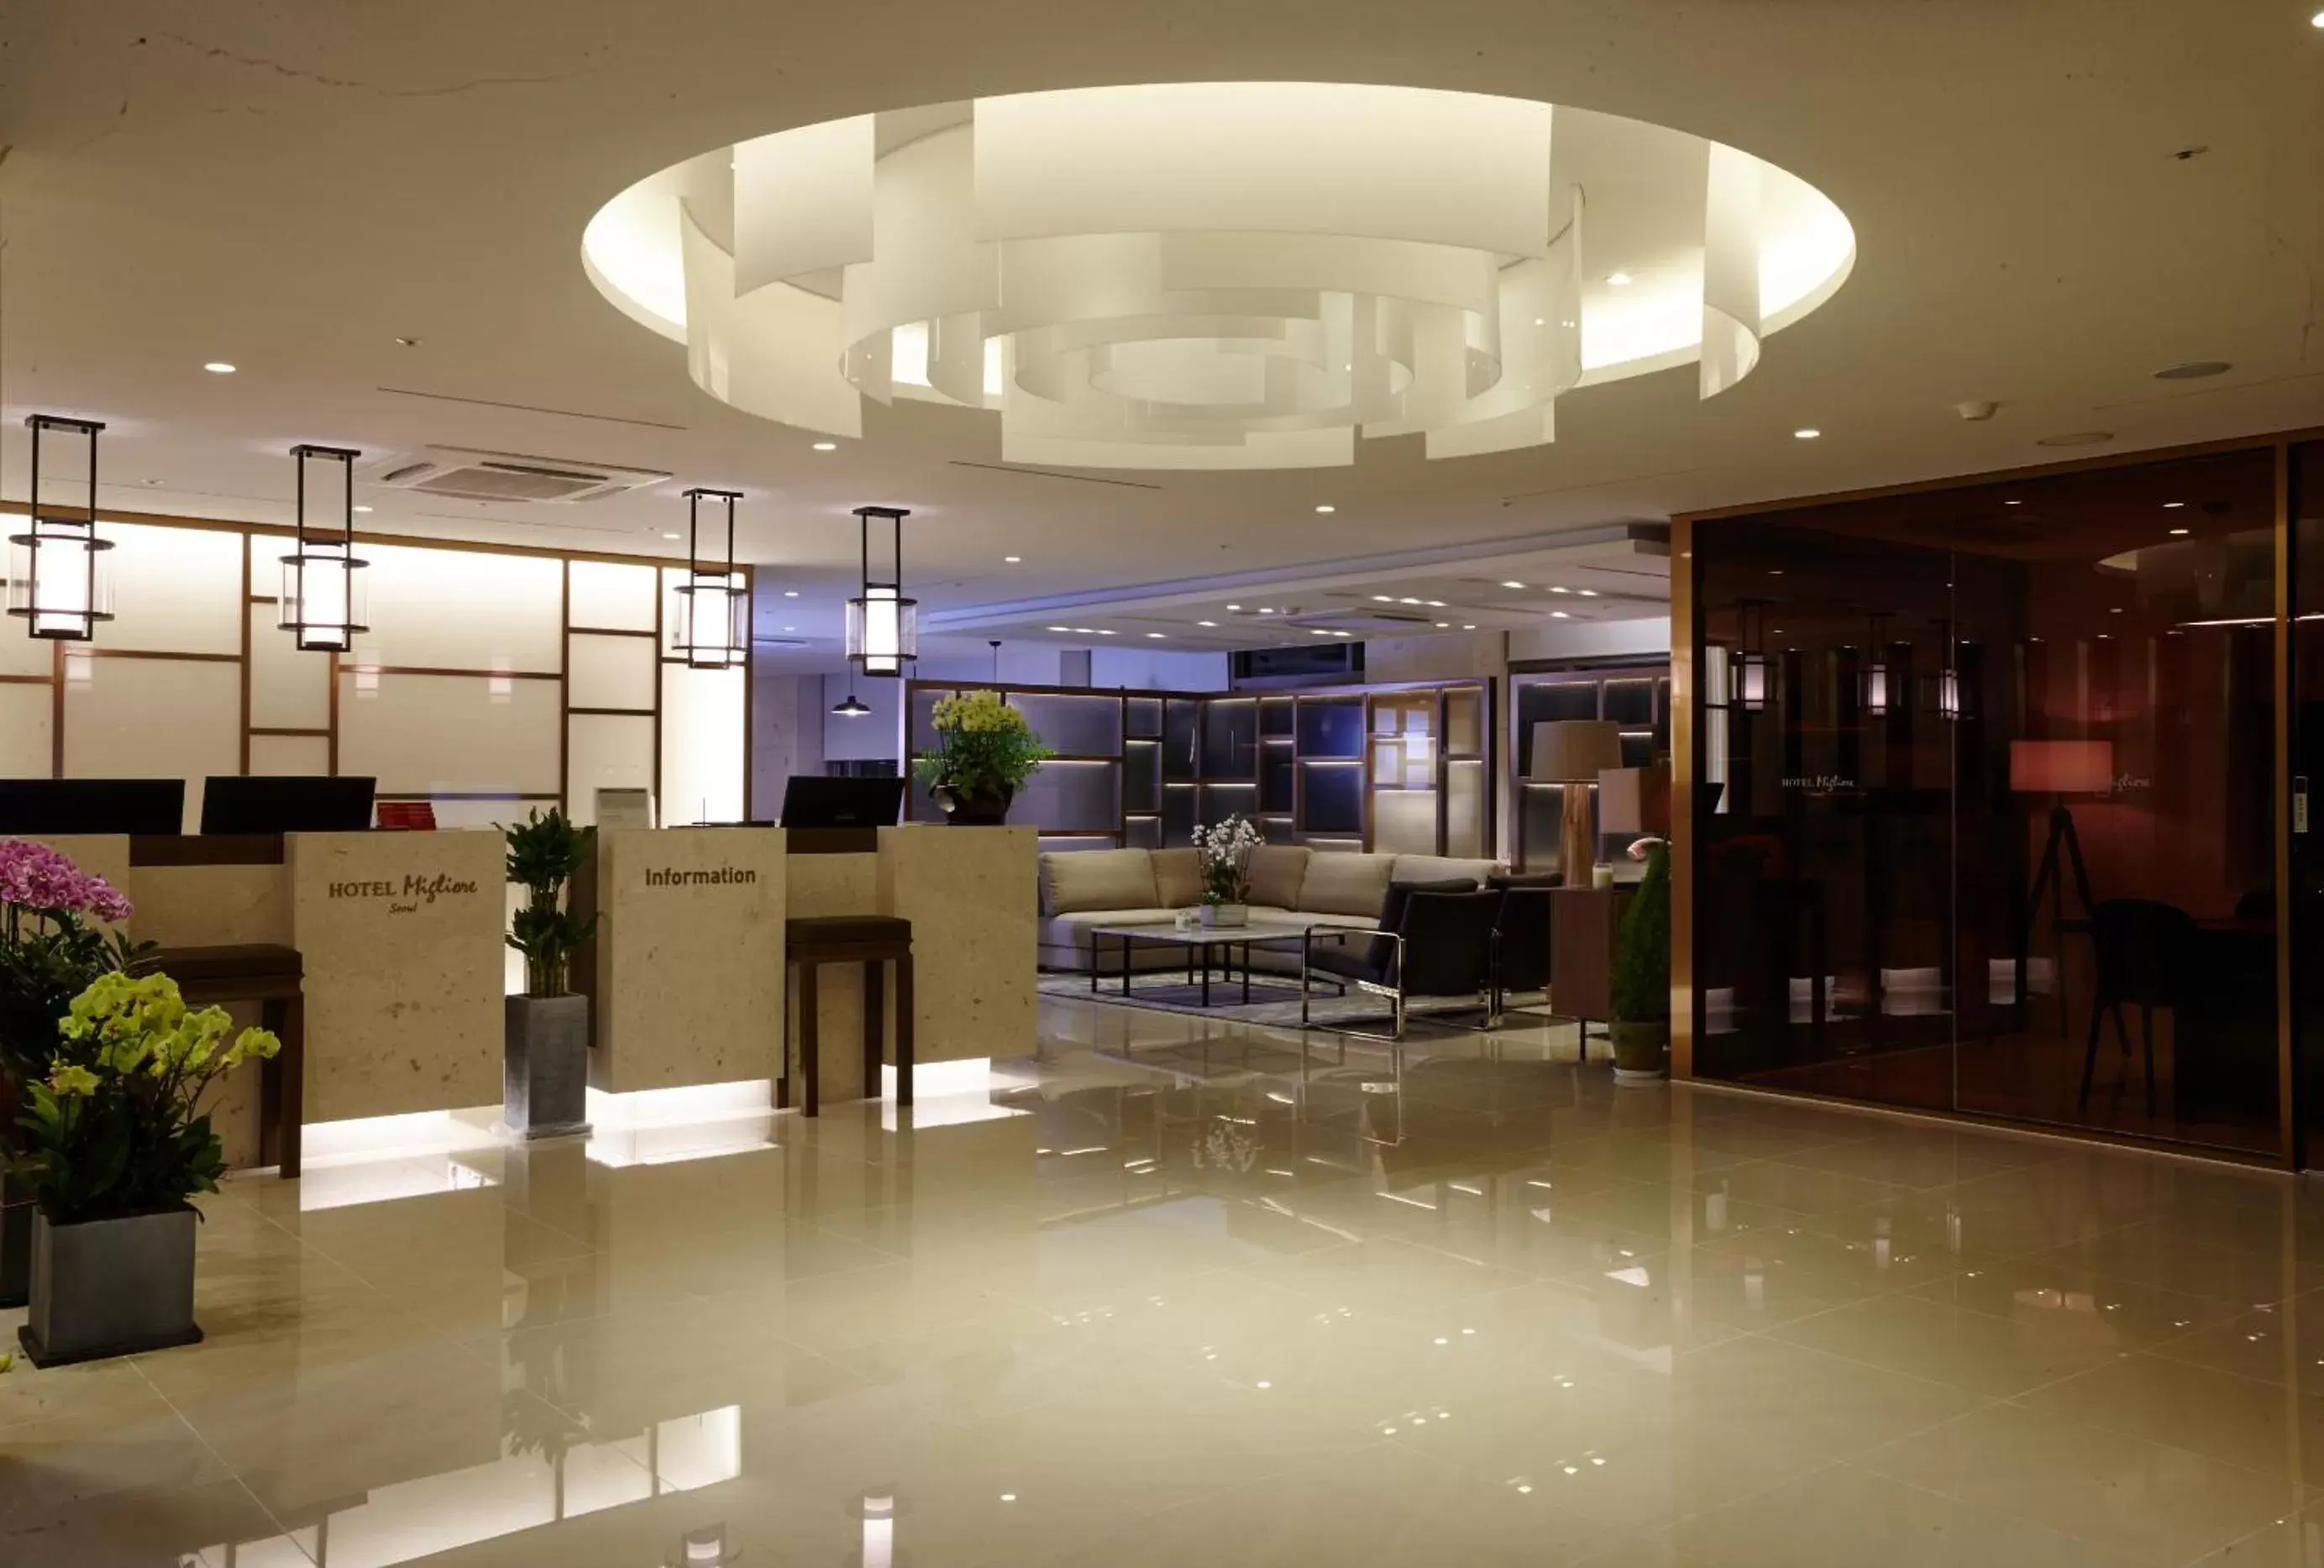 Lobby or reception in Hotel Migliore Seoul